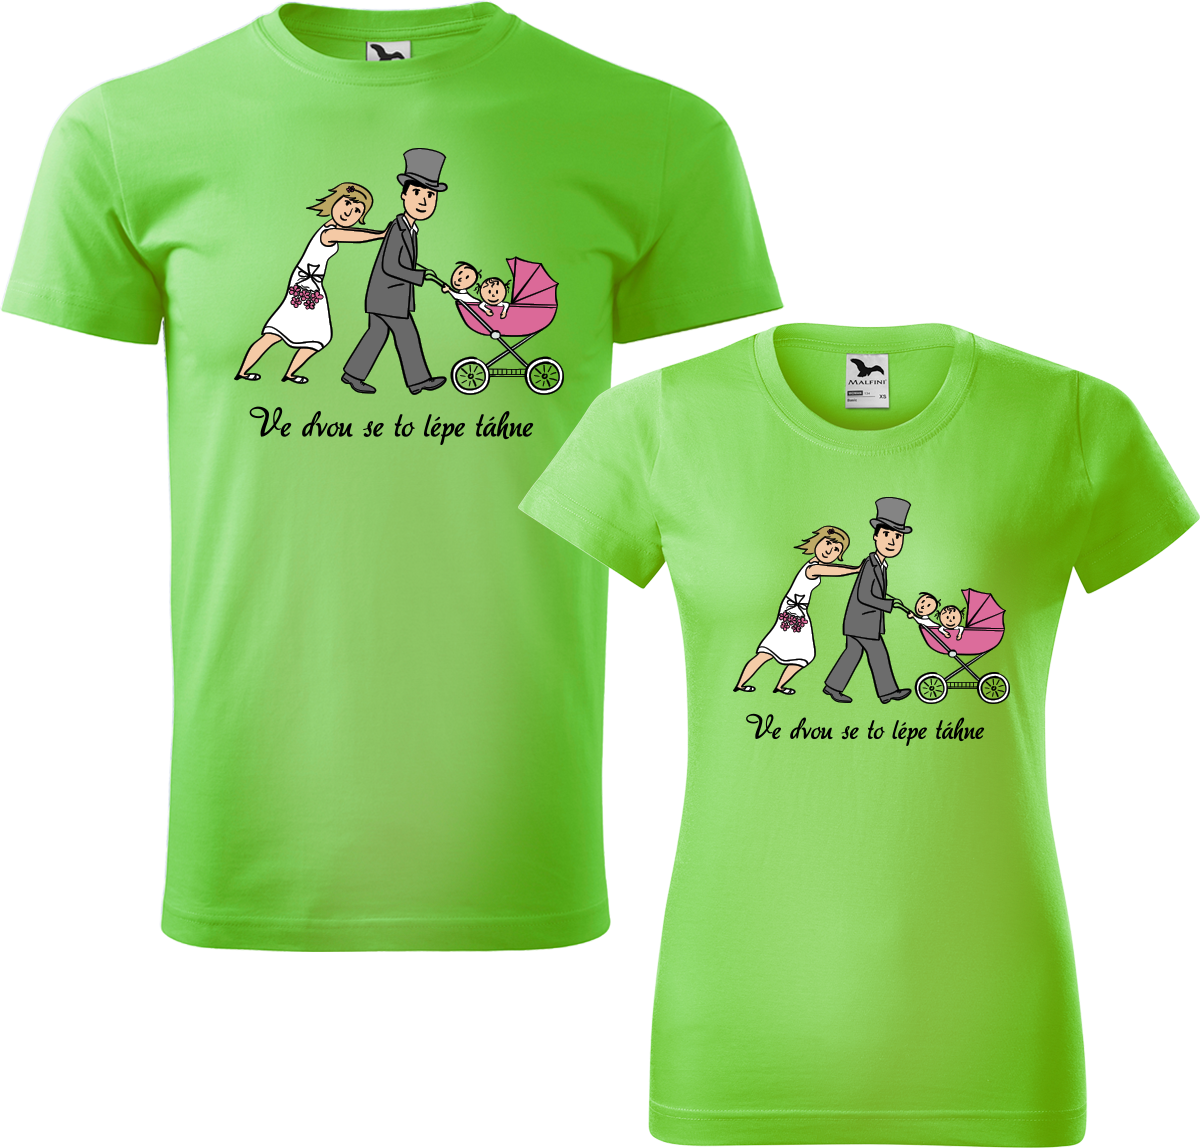 Trička pro páry - Ve dvou se to lépe táhne (kočárek) Barva: Apple Green (92), Velikost dámské tričko: M, Velikost pánské tričko: M